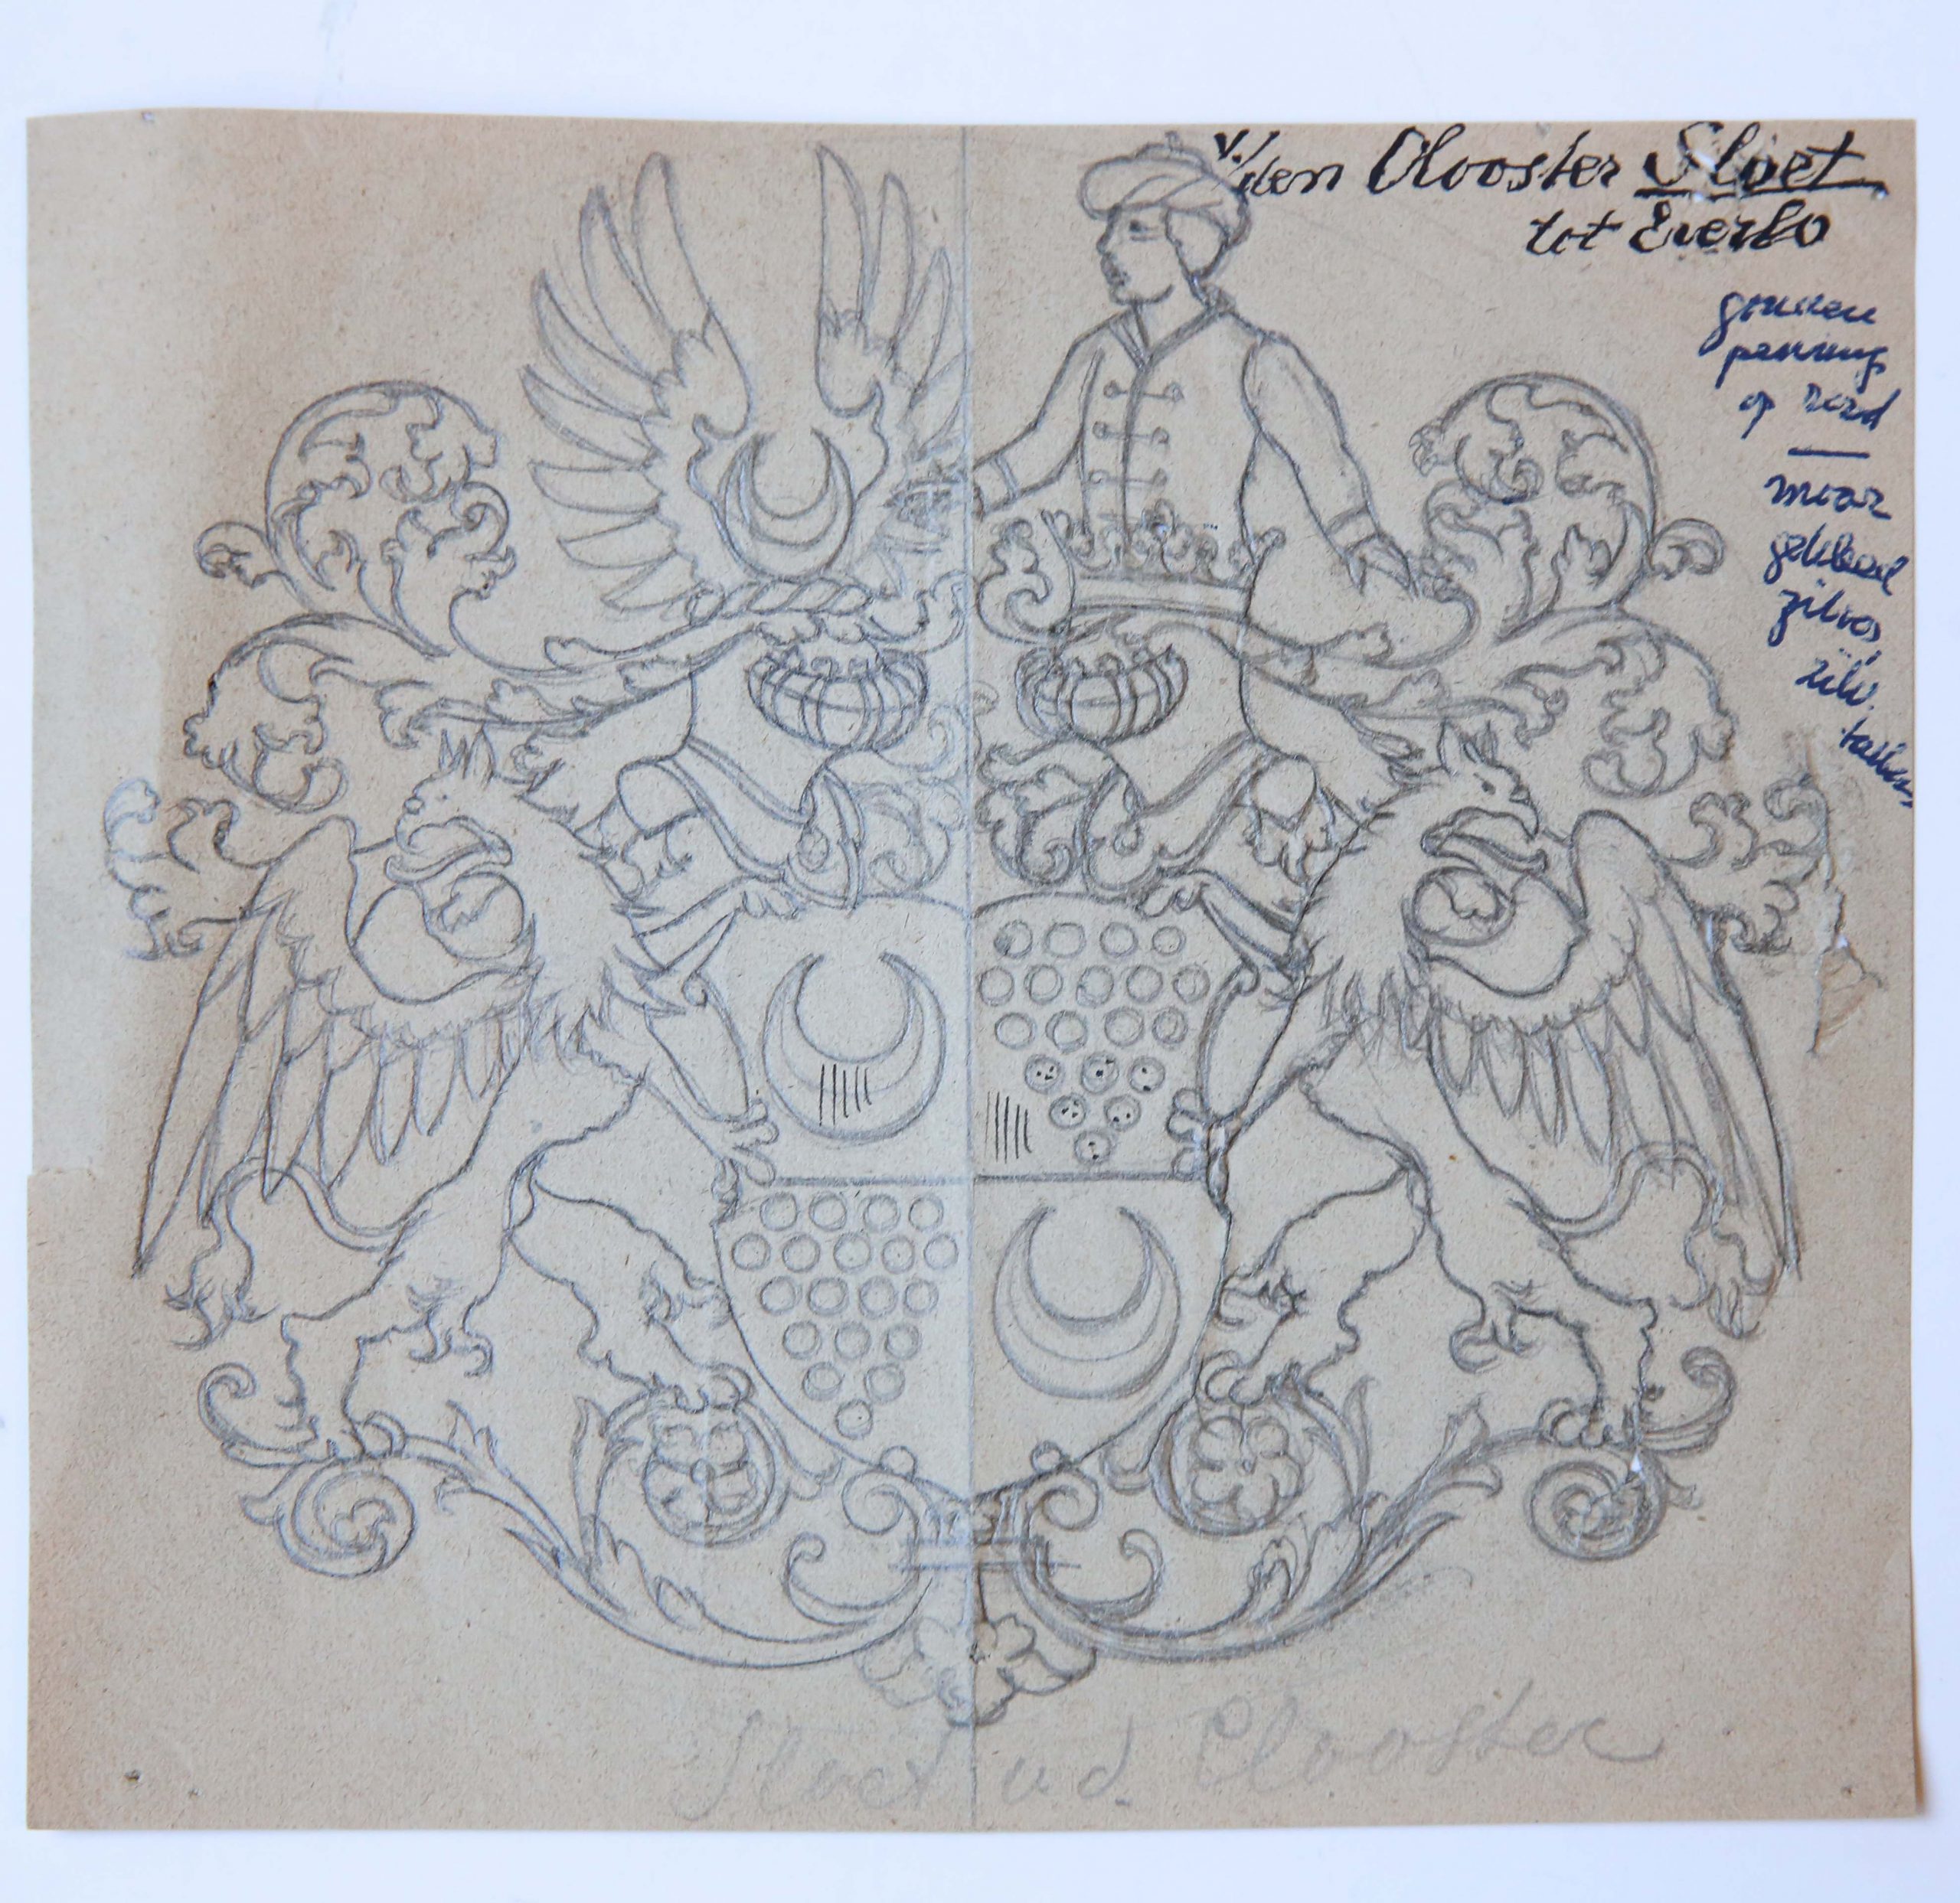 Ontwerp Wapenkaart/Coat of Arms: Sloet van den Clooster (tot Everlo).